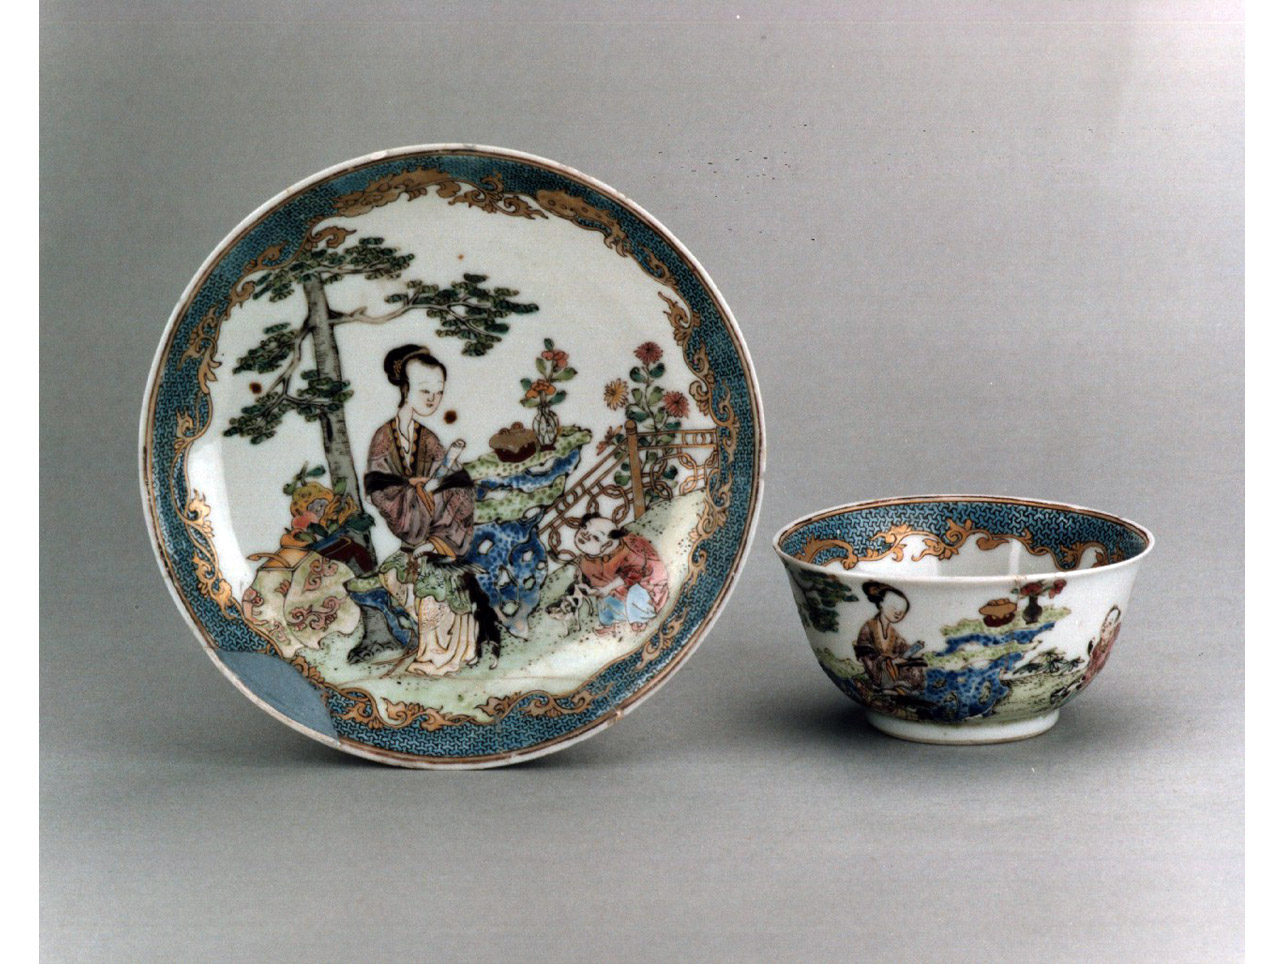 paesaggio con figura femminile e bambino/ motivi decorativi geometrici e vegetali (piattino) - manifattura cinese (sec. XVIII)